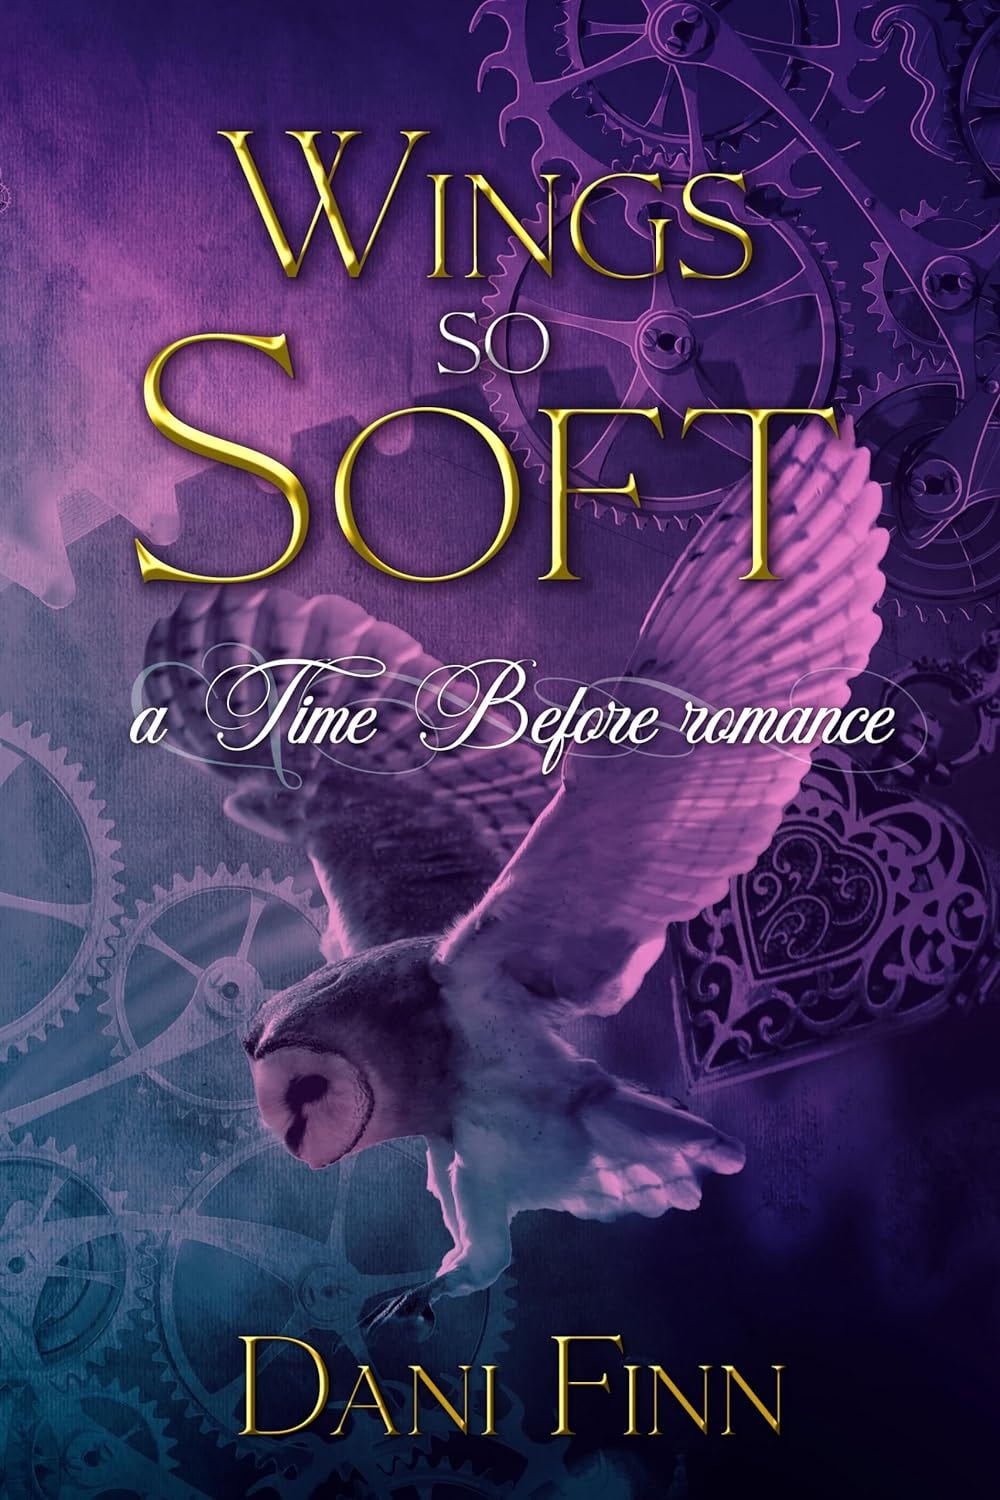 Cover art for Wings So Soft by Dani Finn